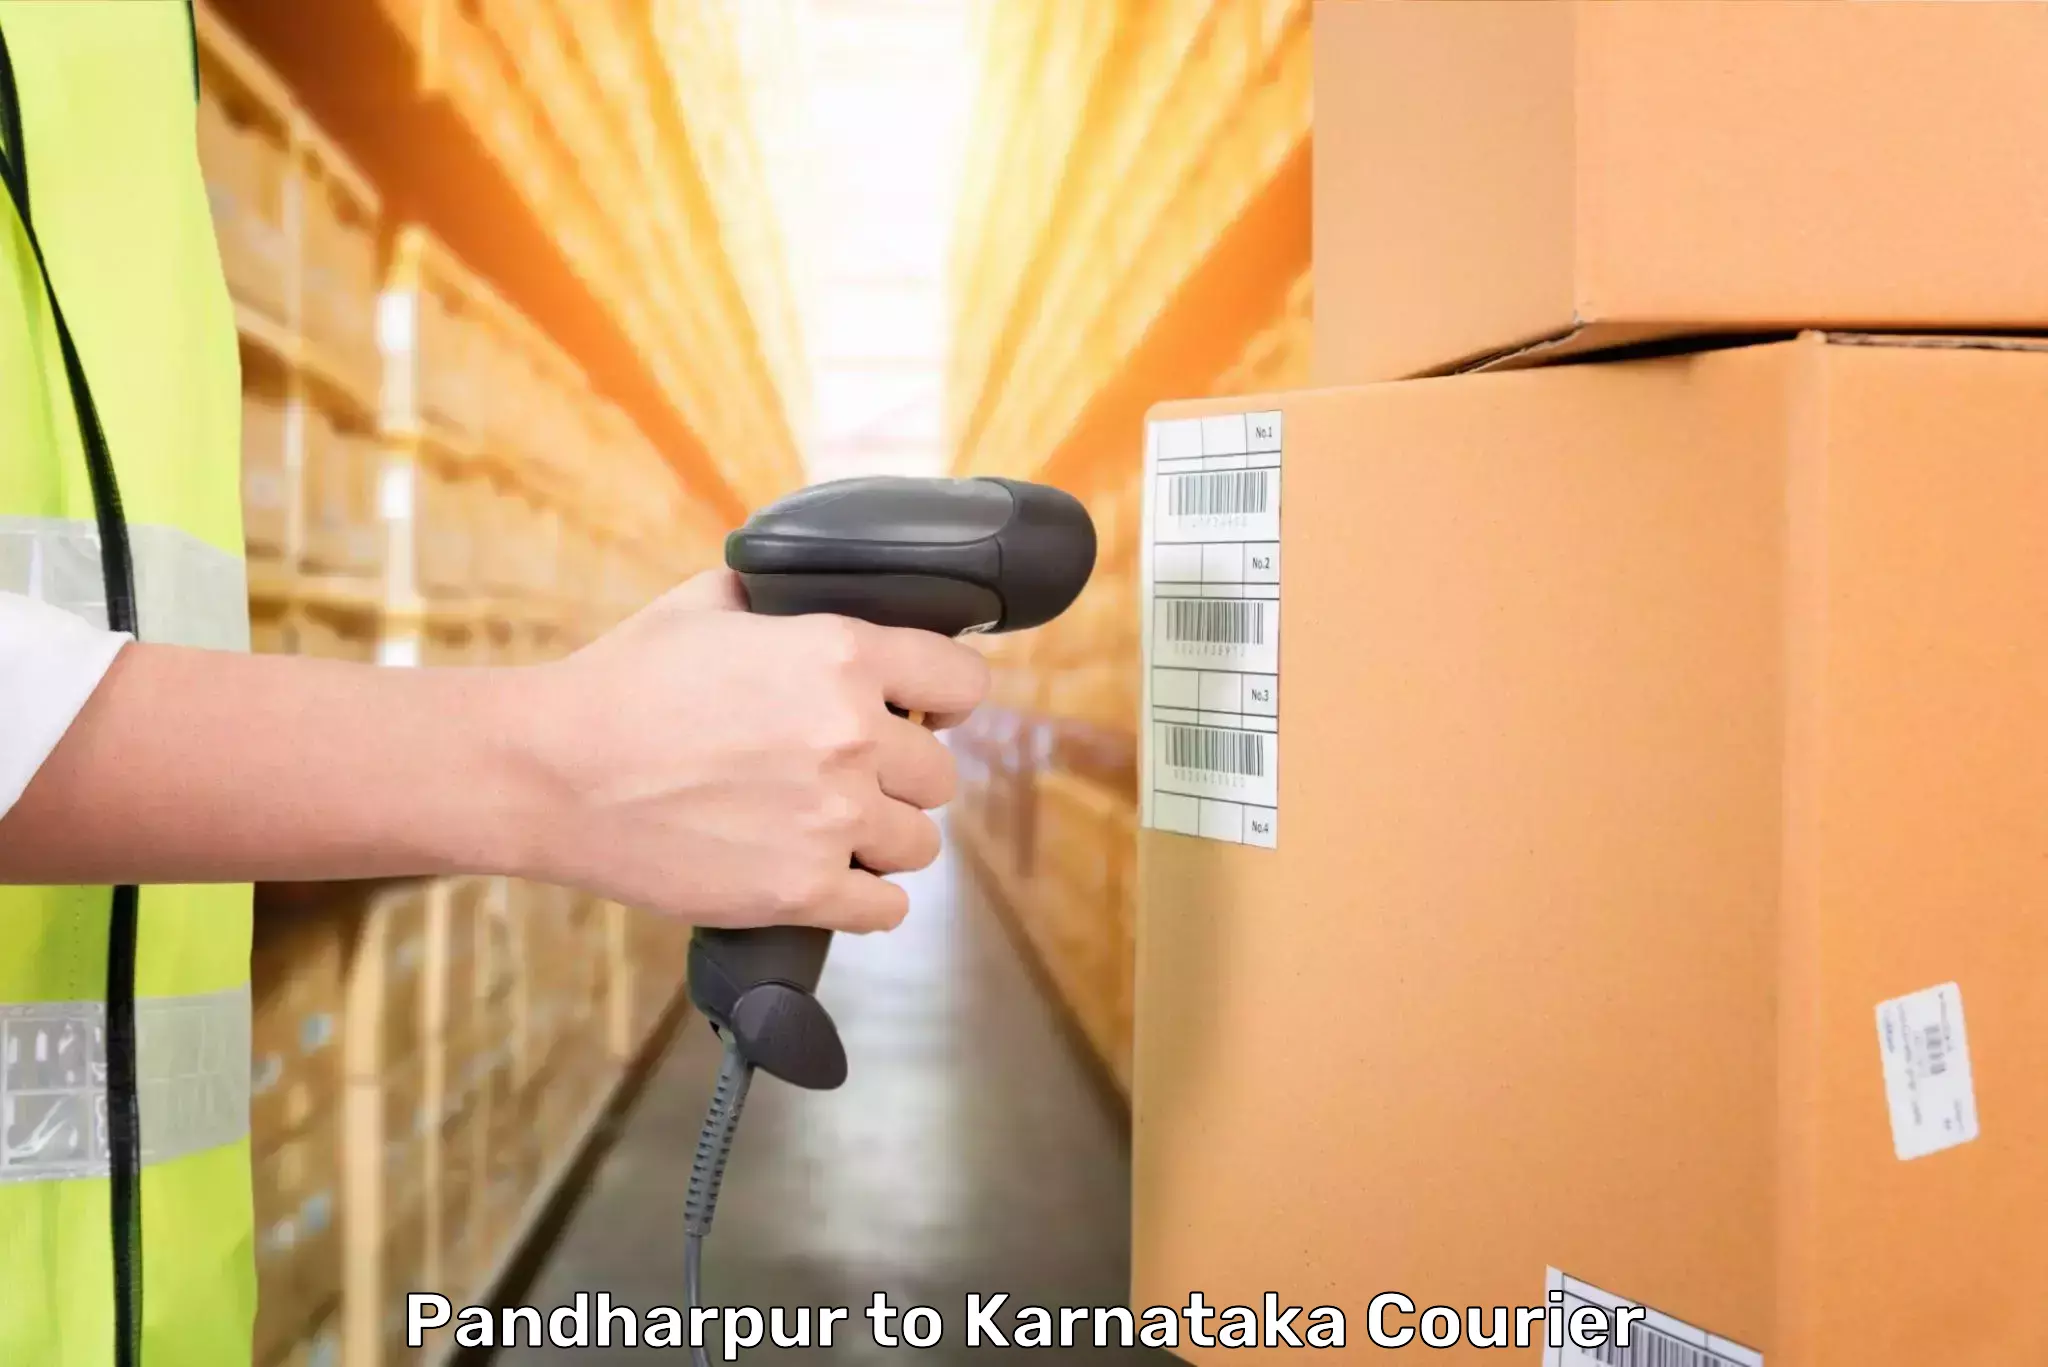 Baggage transport technology Pandharpur to Hukkeri